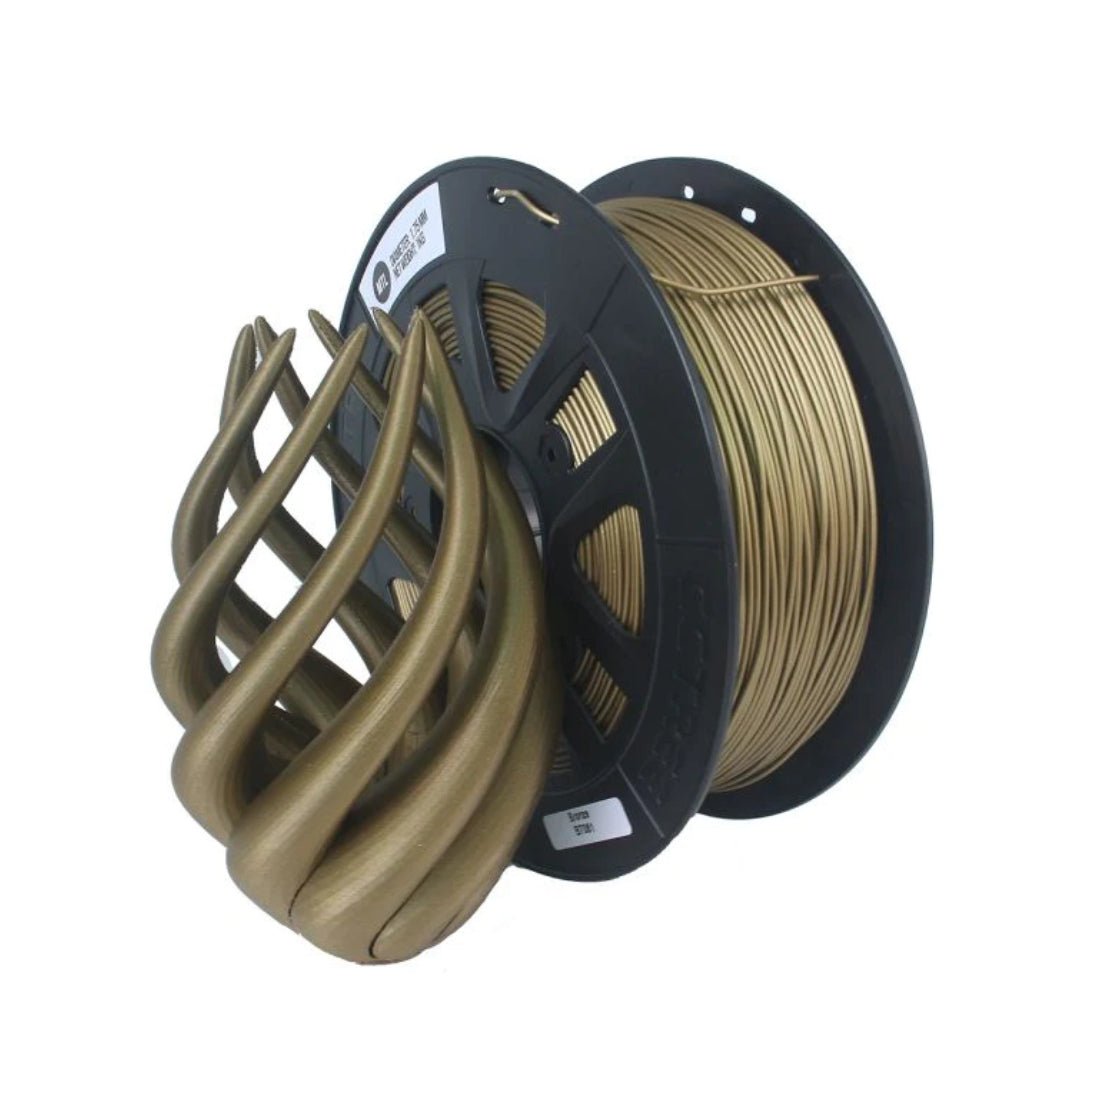 Voltaat CCTREE PLA Filament 1 KG - 1.75 mm - Bronze - Store 974 | ستور ٩٧٤